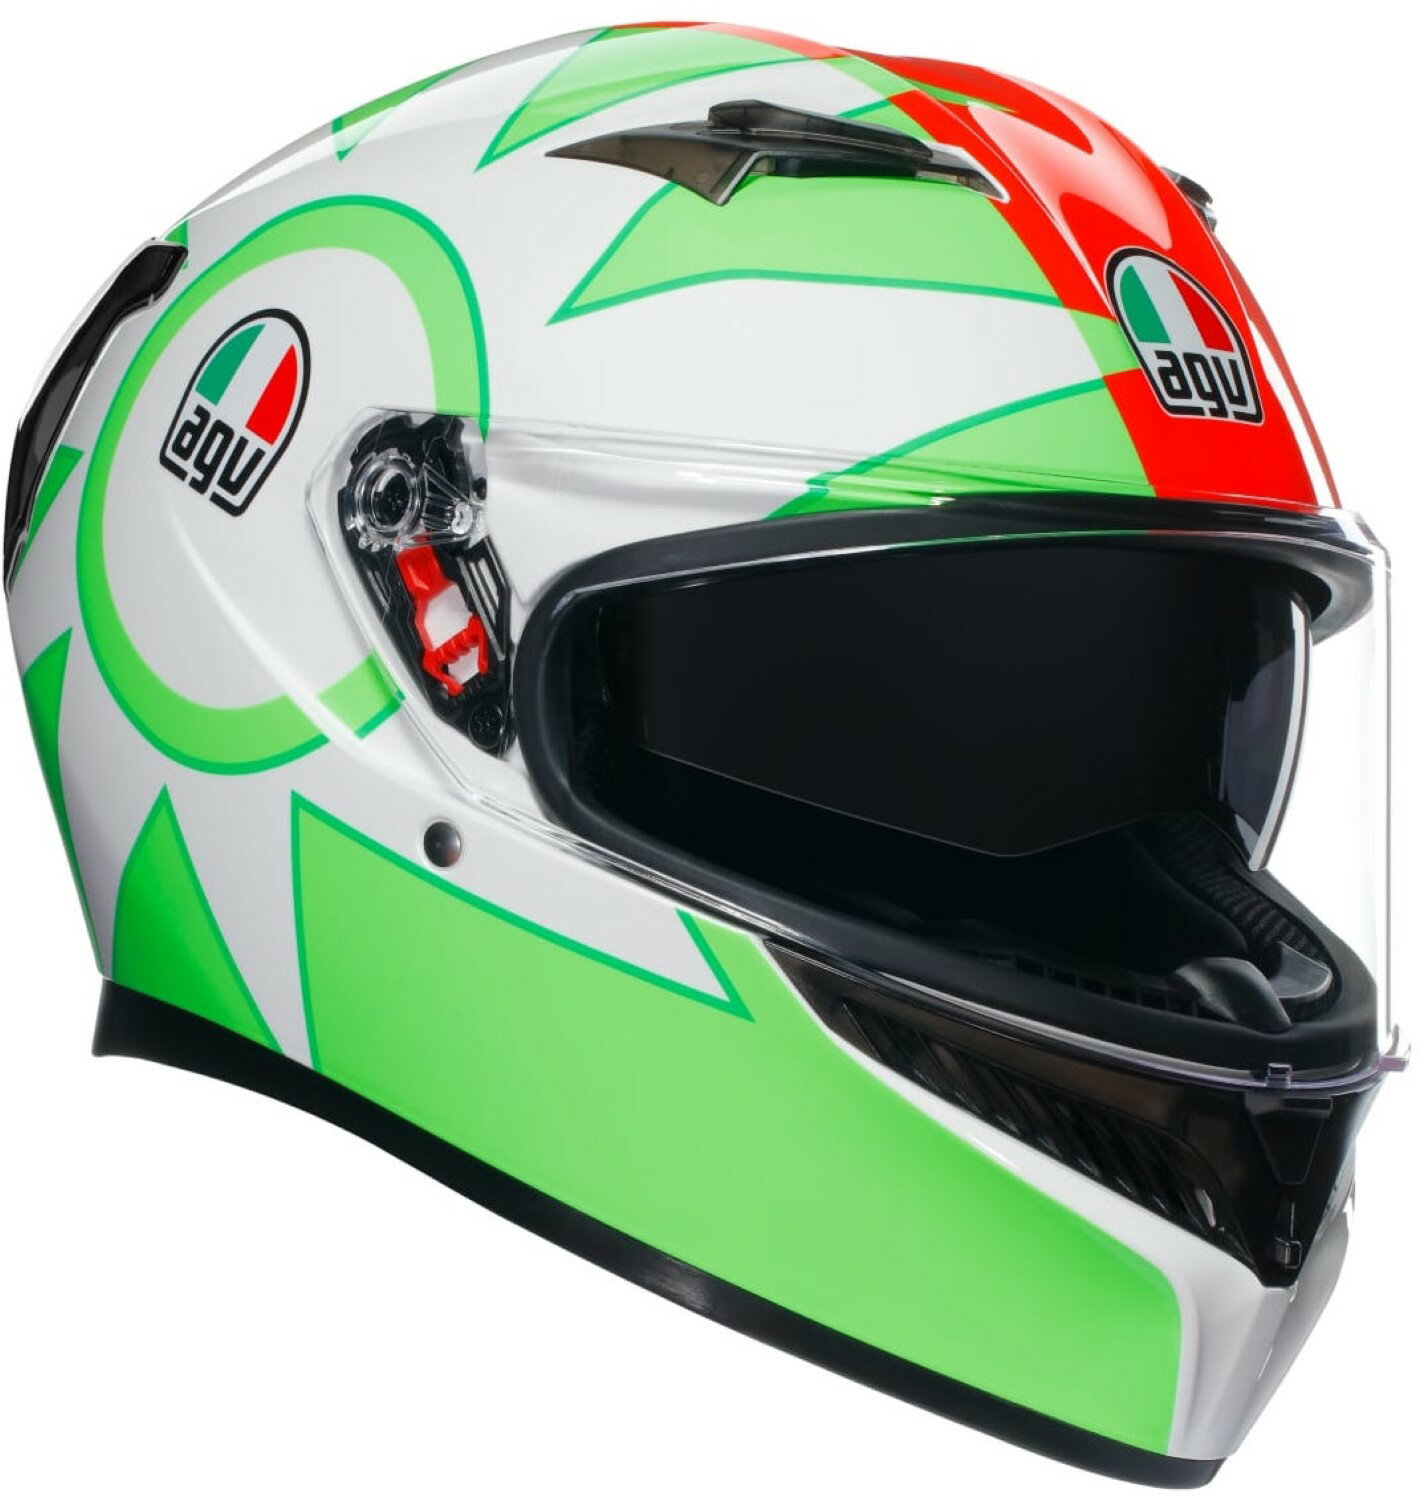  AGV(エージーブイ) バイクヘルメット フルフェイス K3 ROSSI MUGELLO 2018 (ロッシ ムジェロ 2018) XLサイズ (61-62cm) 18381007005-XL